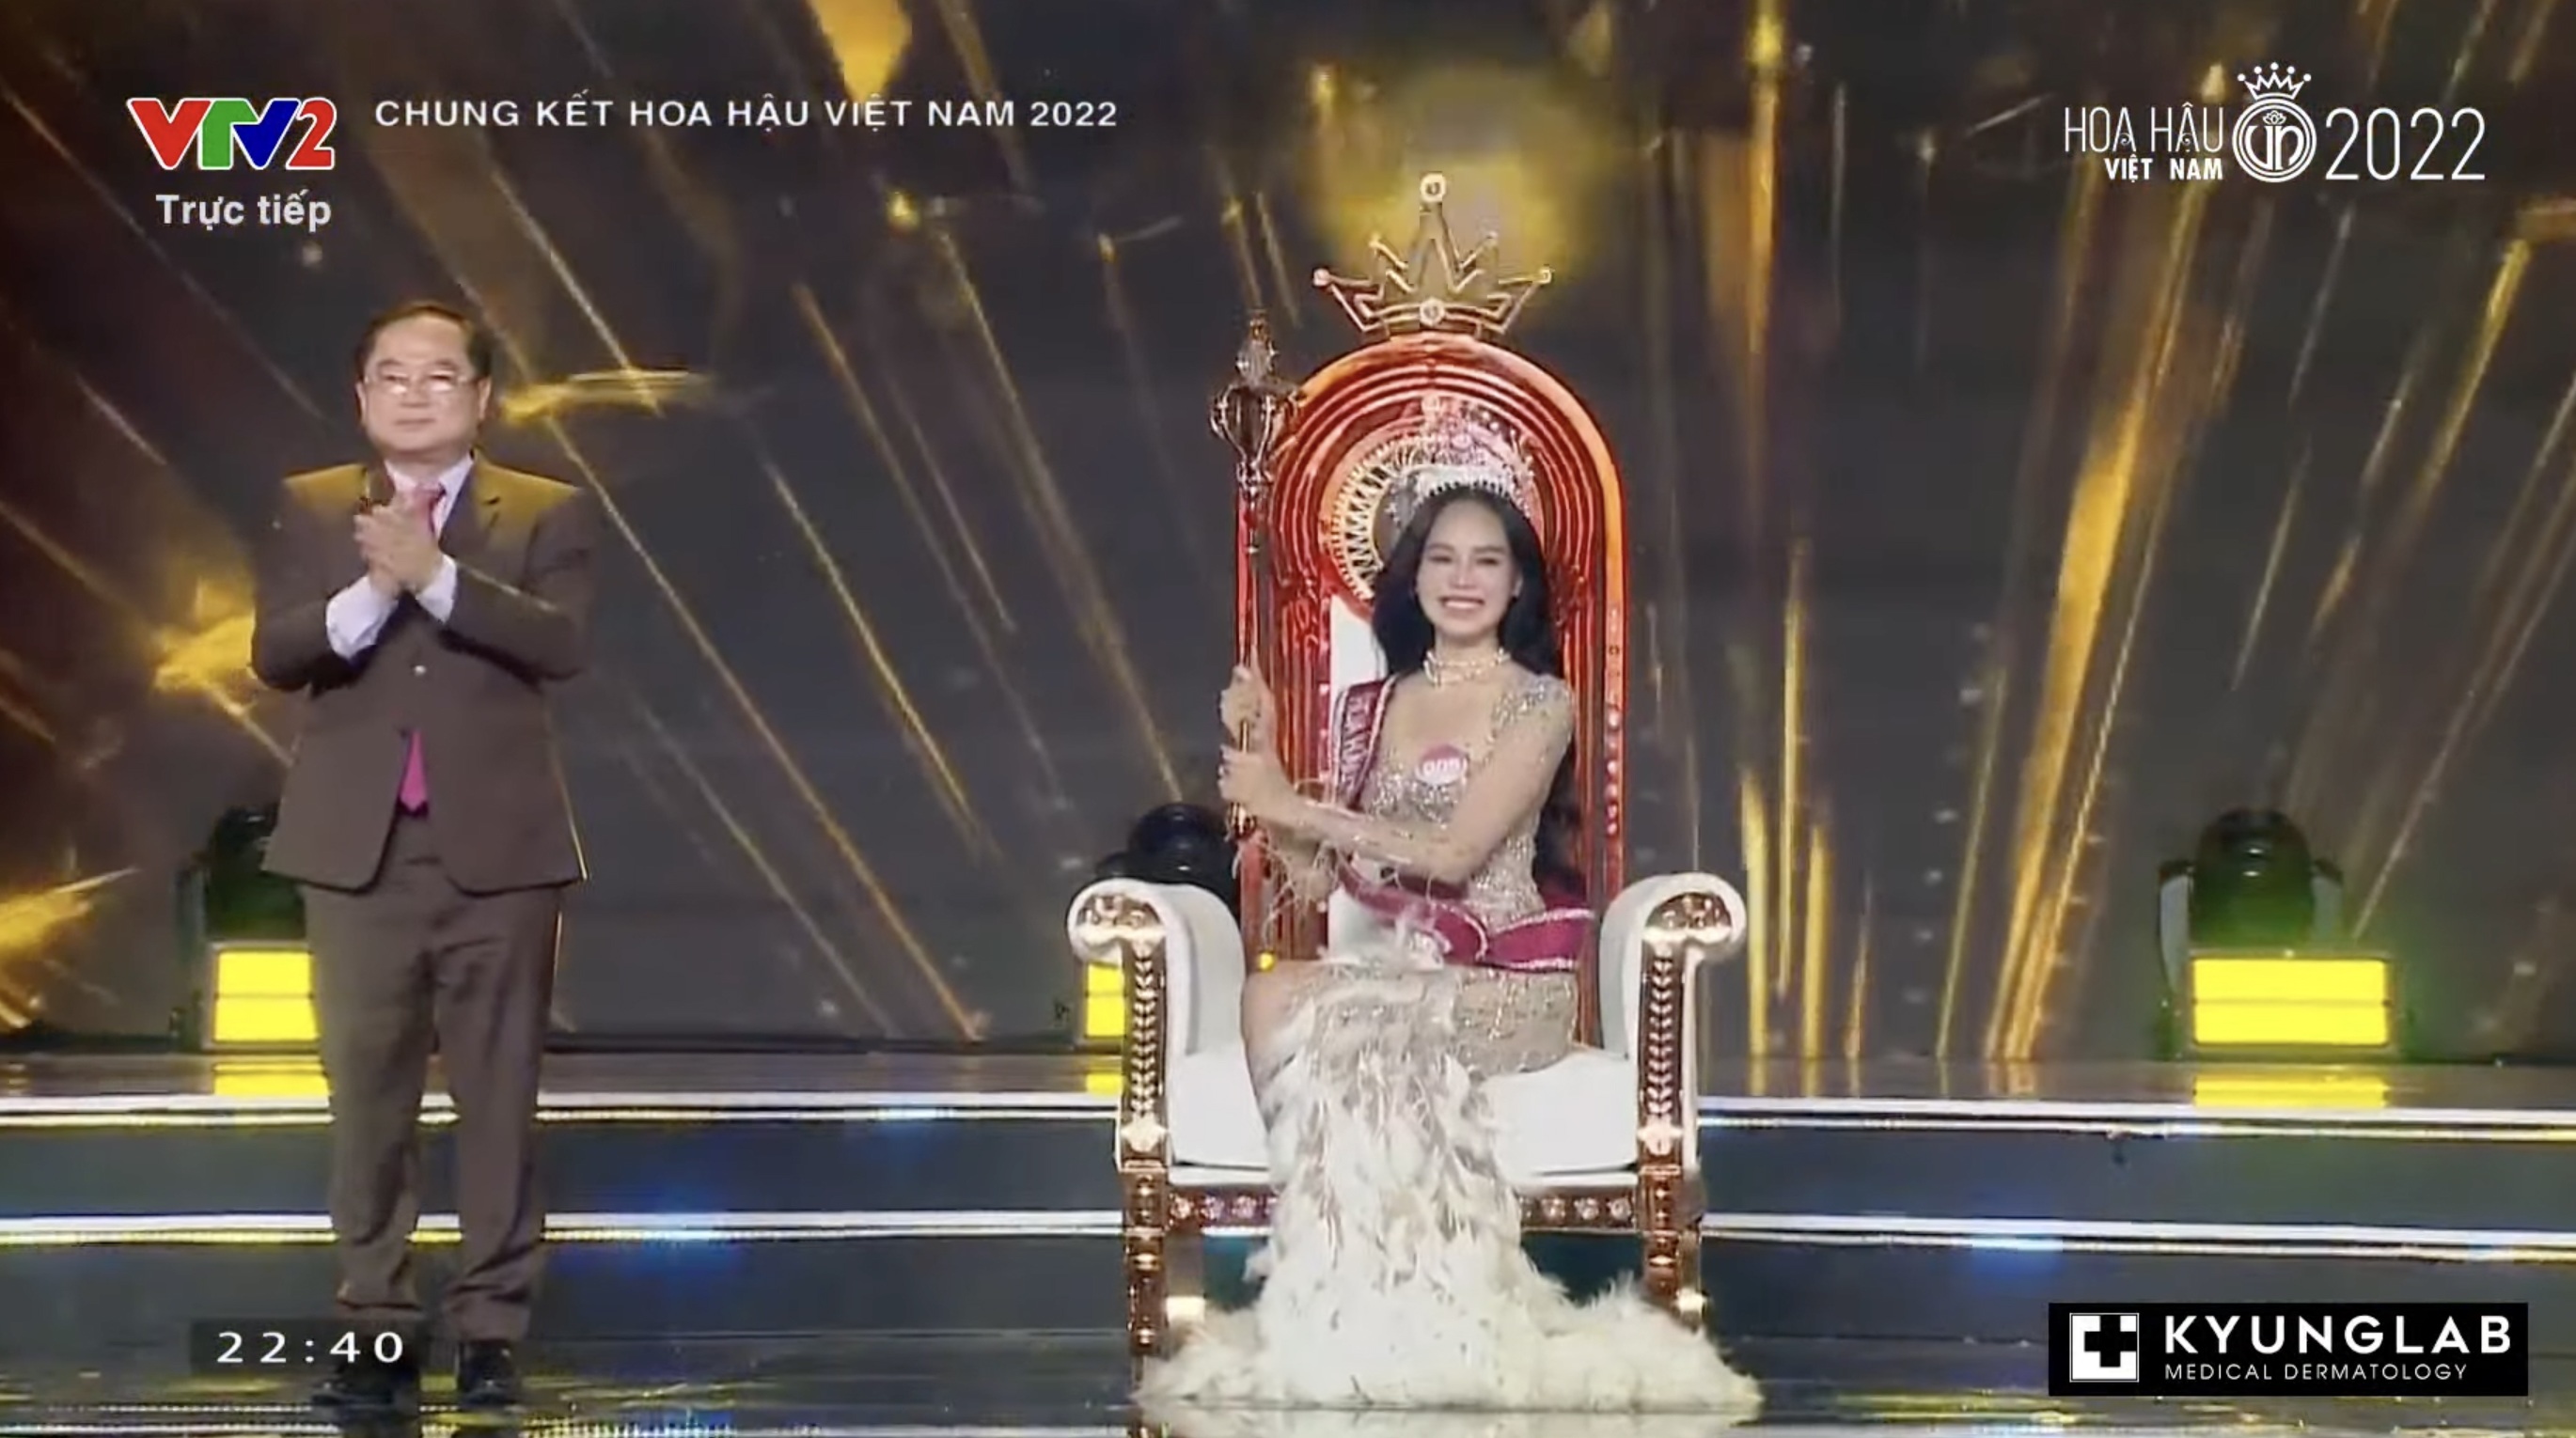 Chung kết Hoa hậu Việt Nam 2022: Tân Hoa hậu chính thức gọi tên Huỳnh Thị Thanh Thuỷ - 7